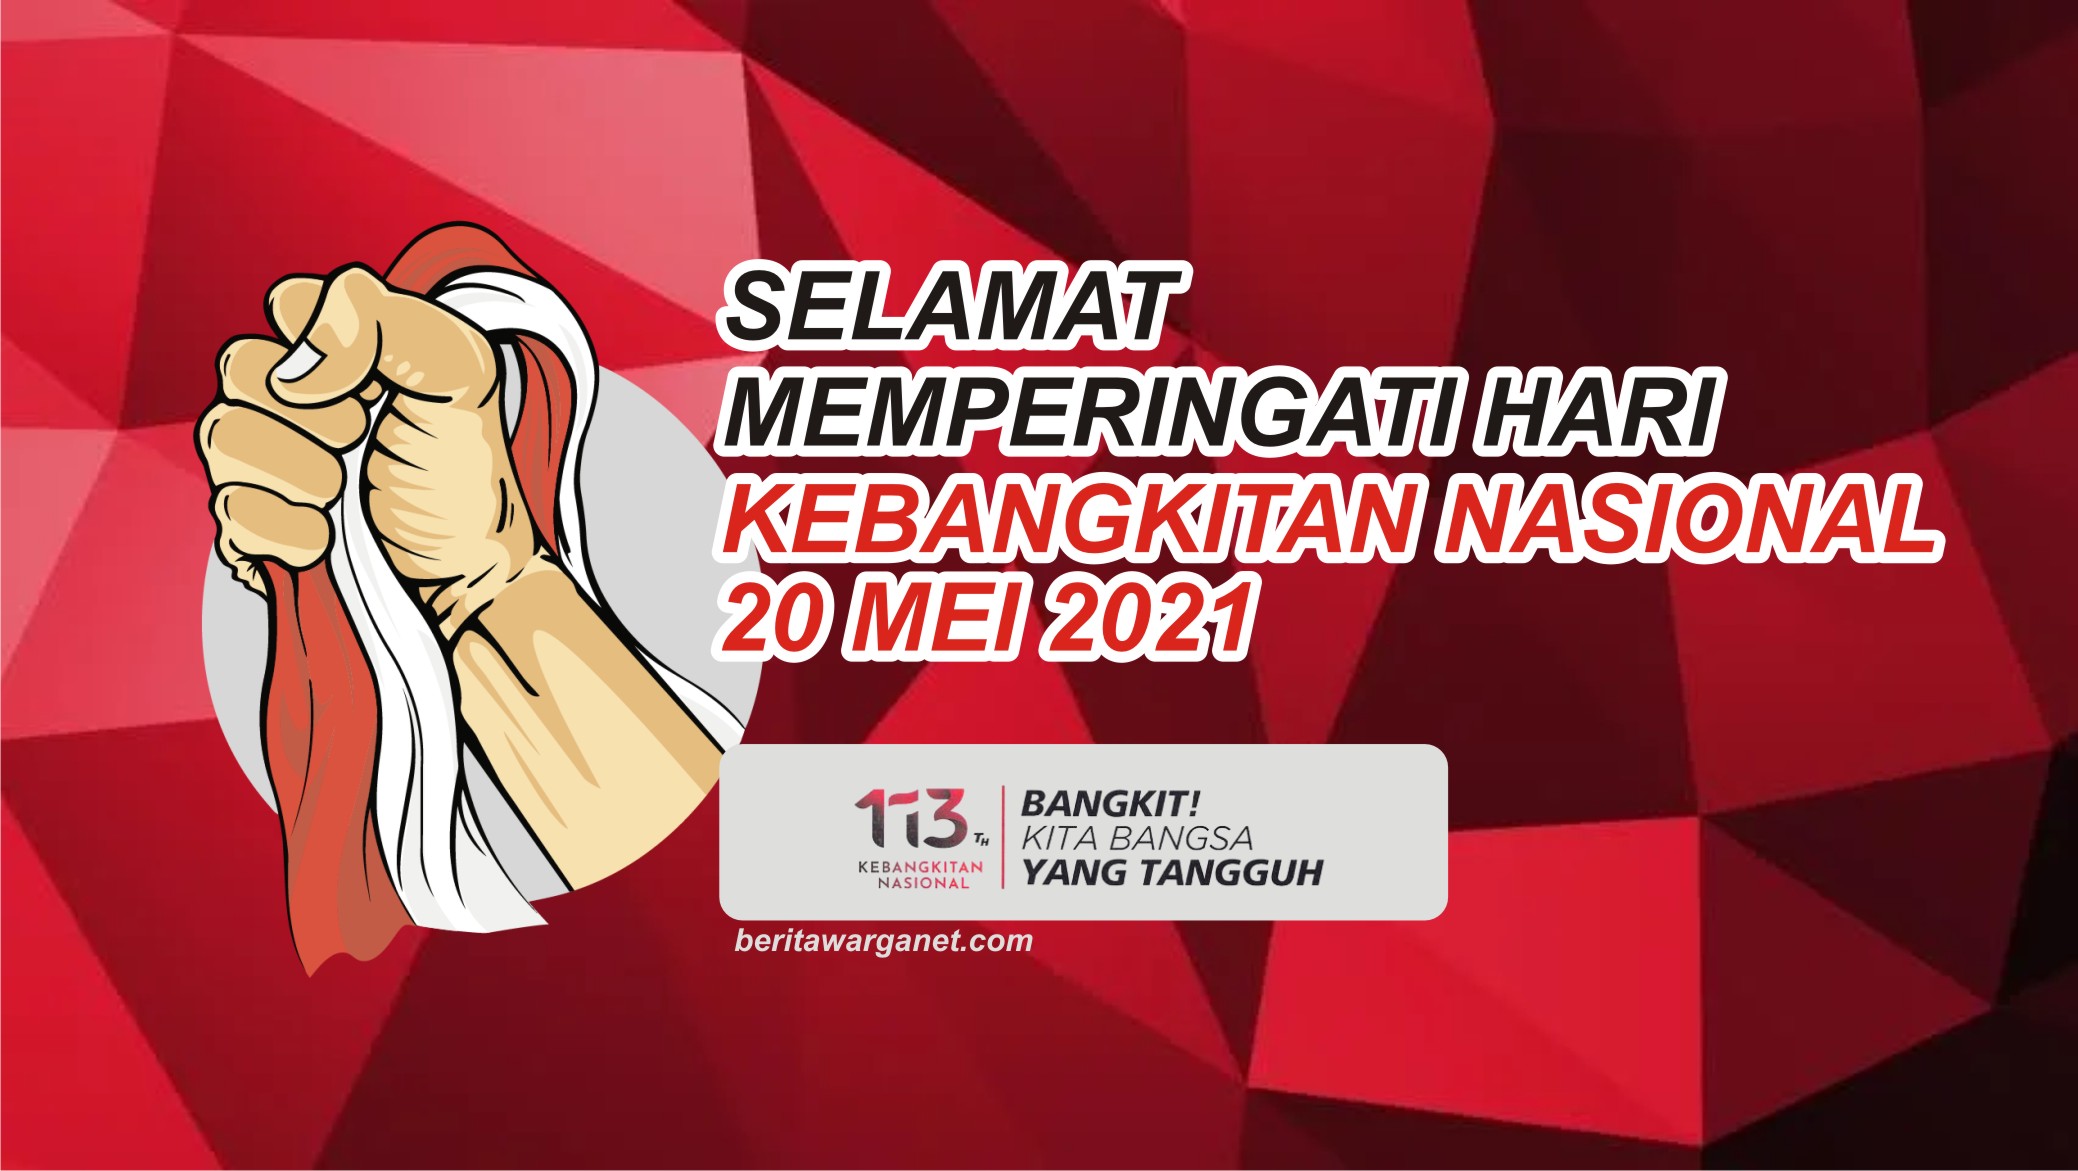 Poster tema kebangkitan nasional 2021